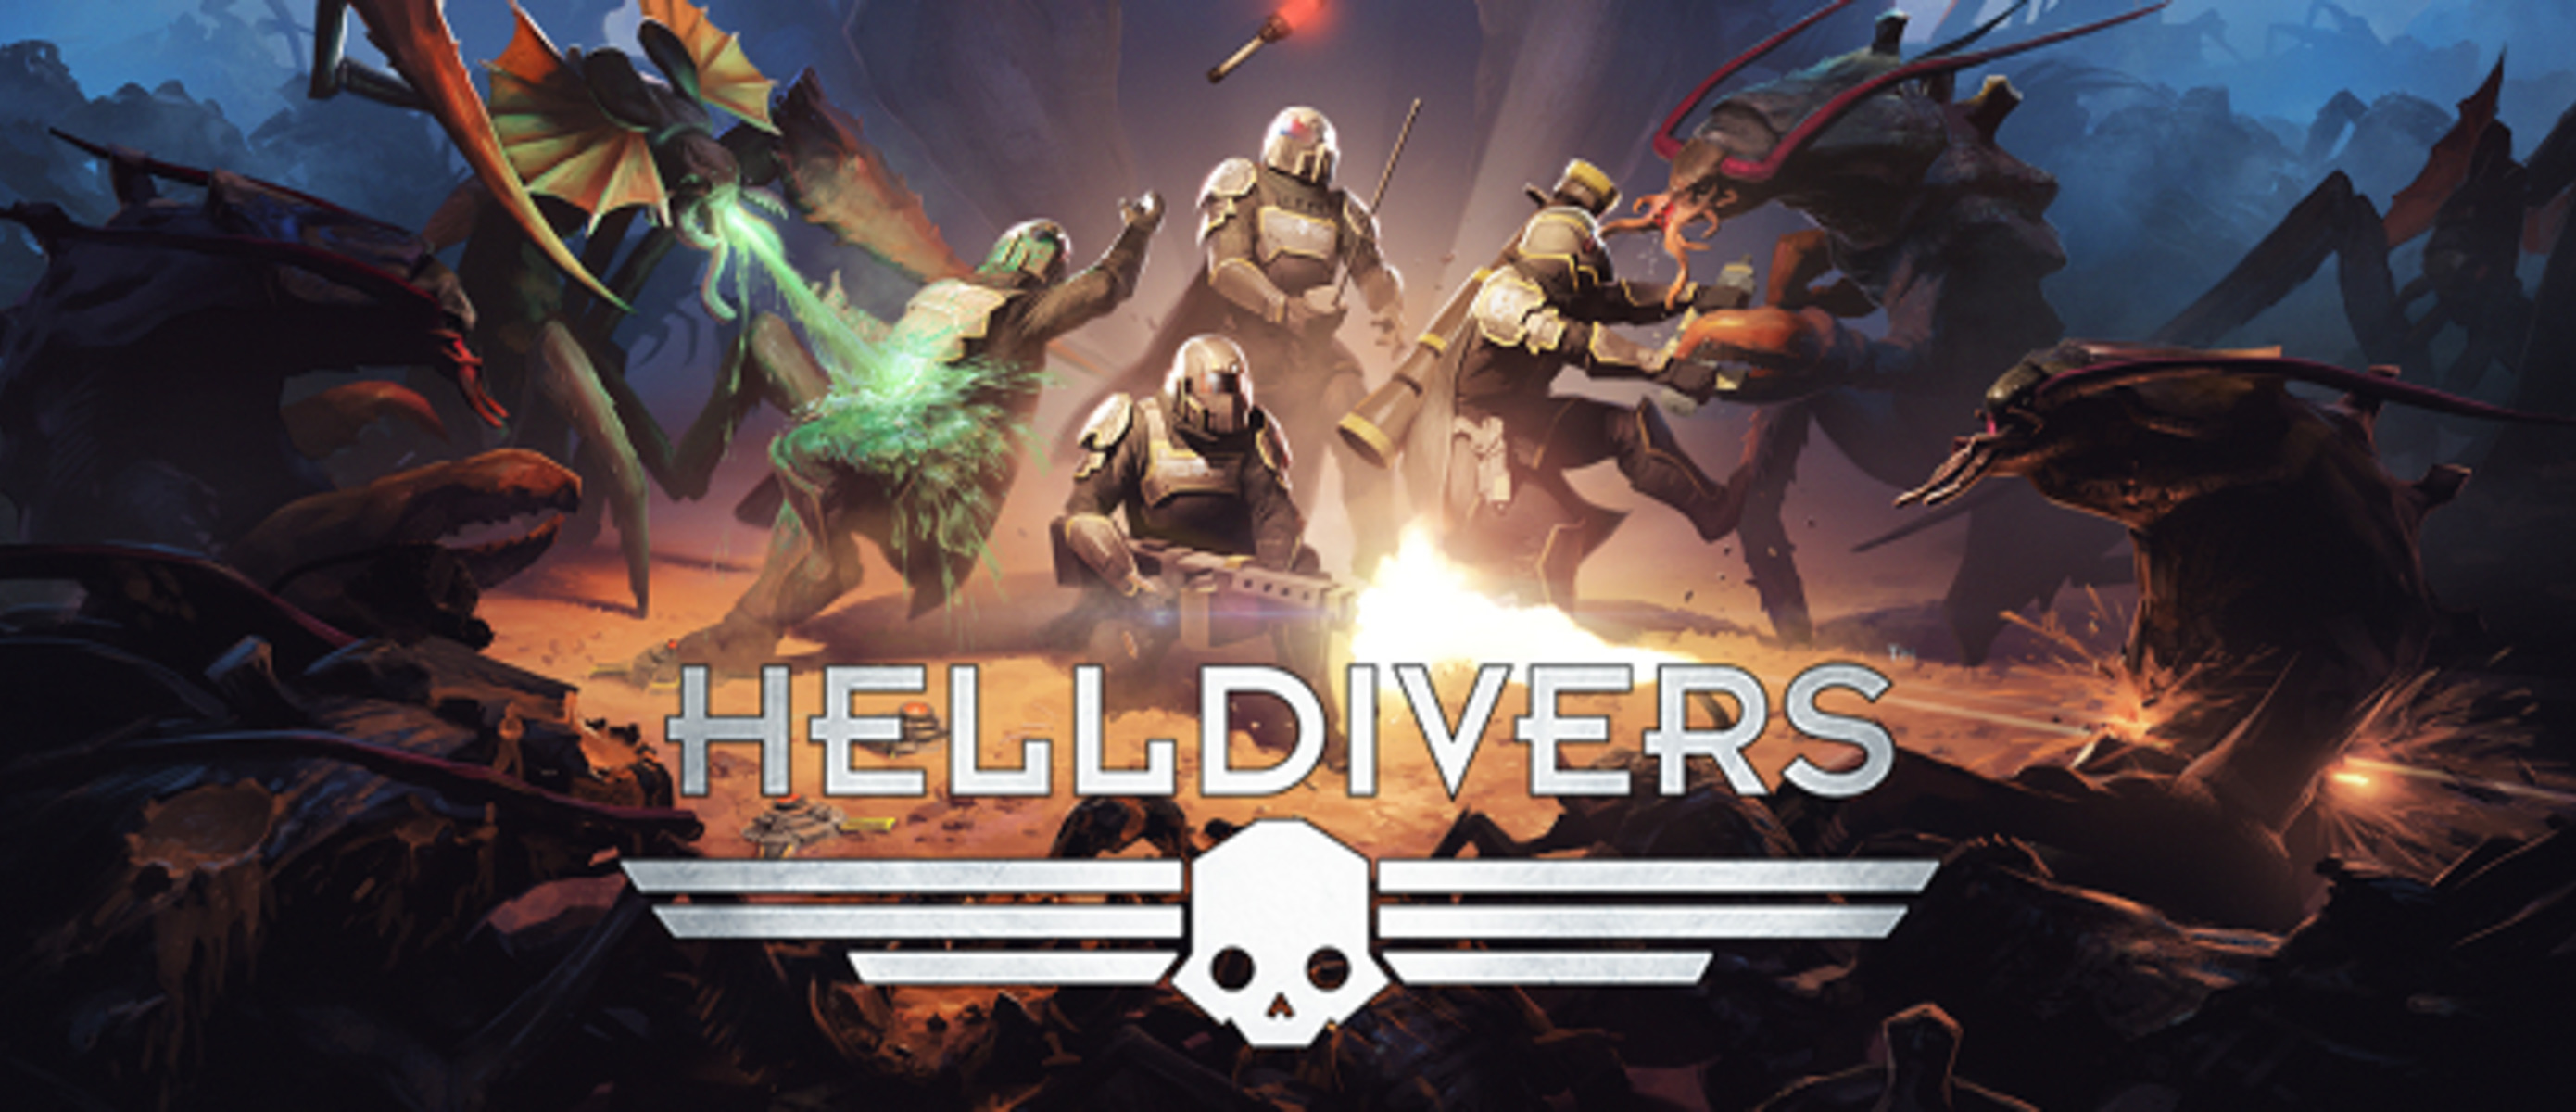 Игры похожие на helldivers 2. Helldivers 2. Helldivers враги. Helldivers расы. Helldivers 1 расы.